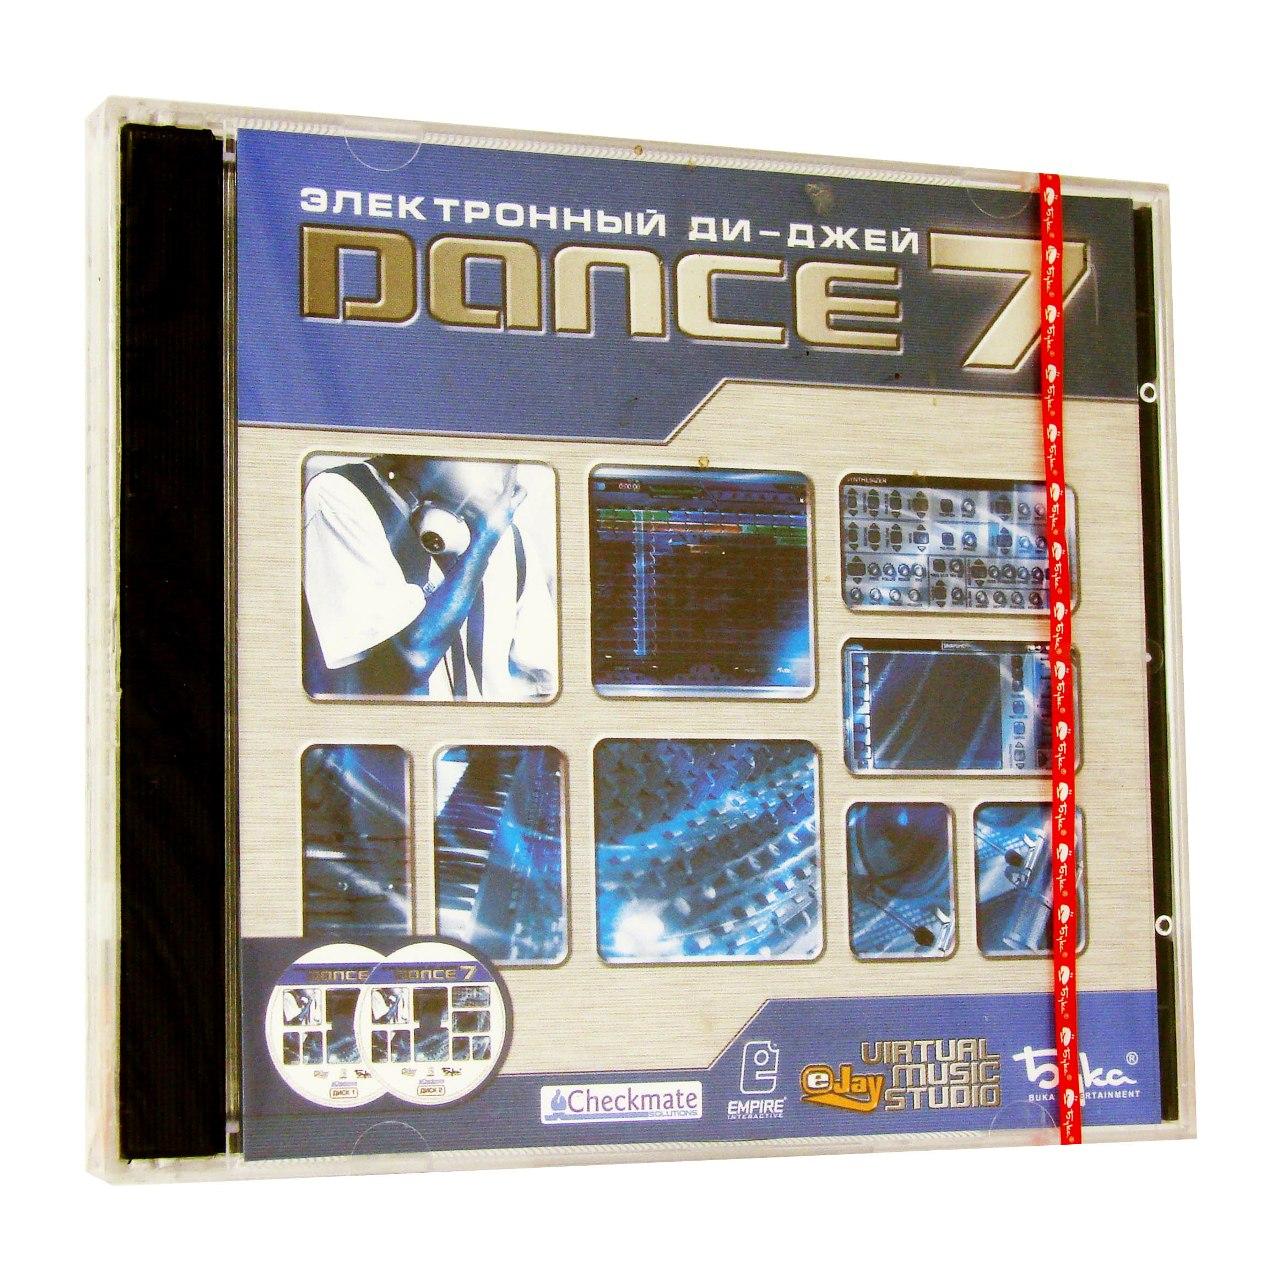 Компьютерный компакт-диск Электронный Ди Джей:Dance 7 (PC), фирма "Бука", 2CD